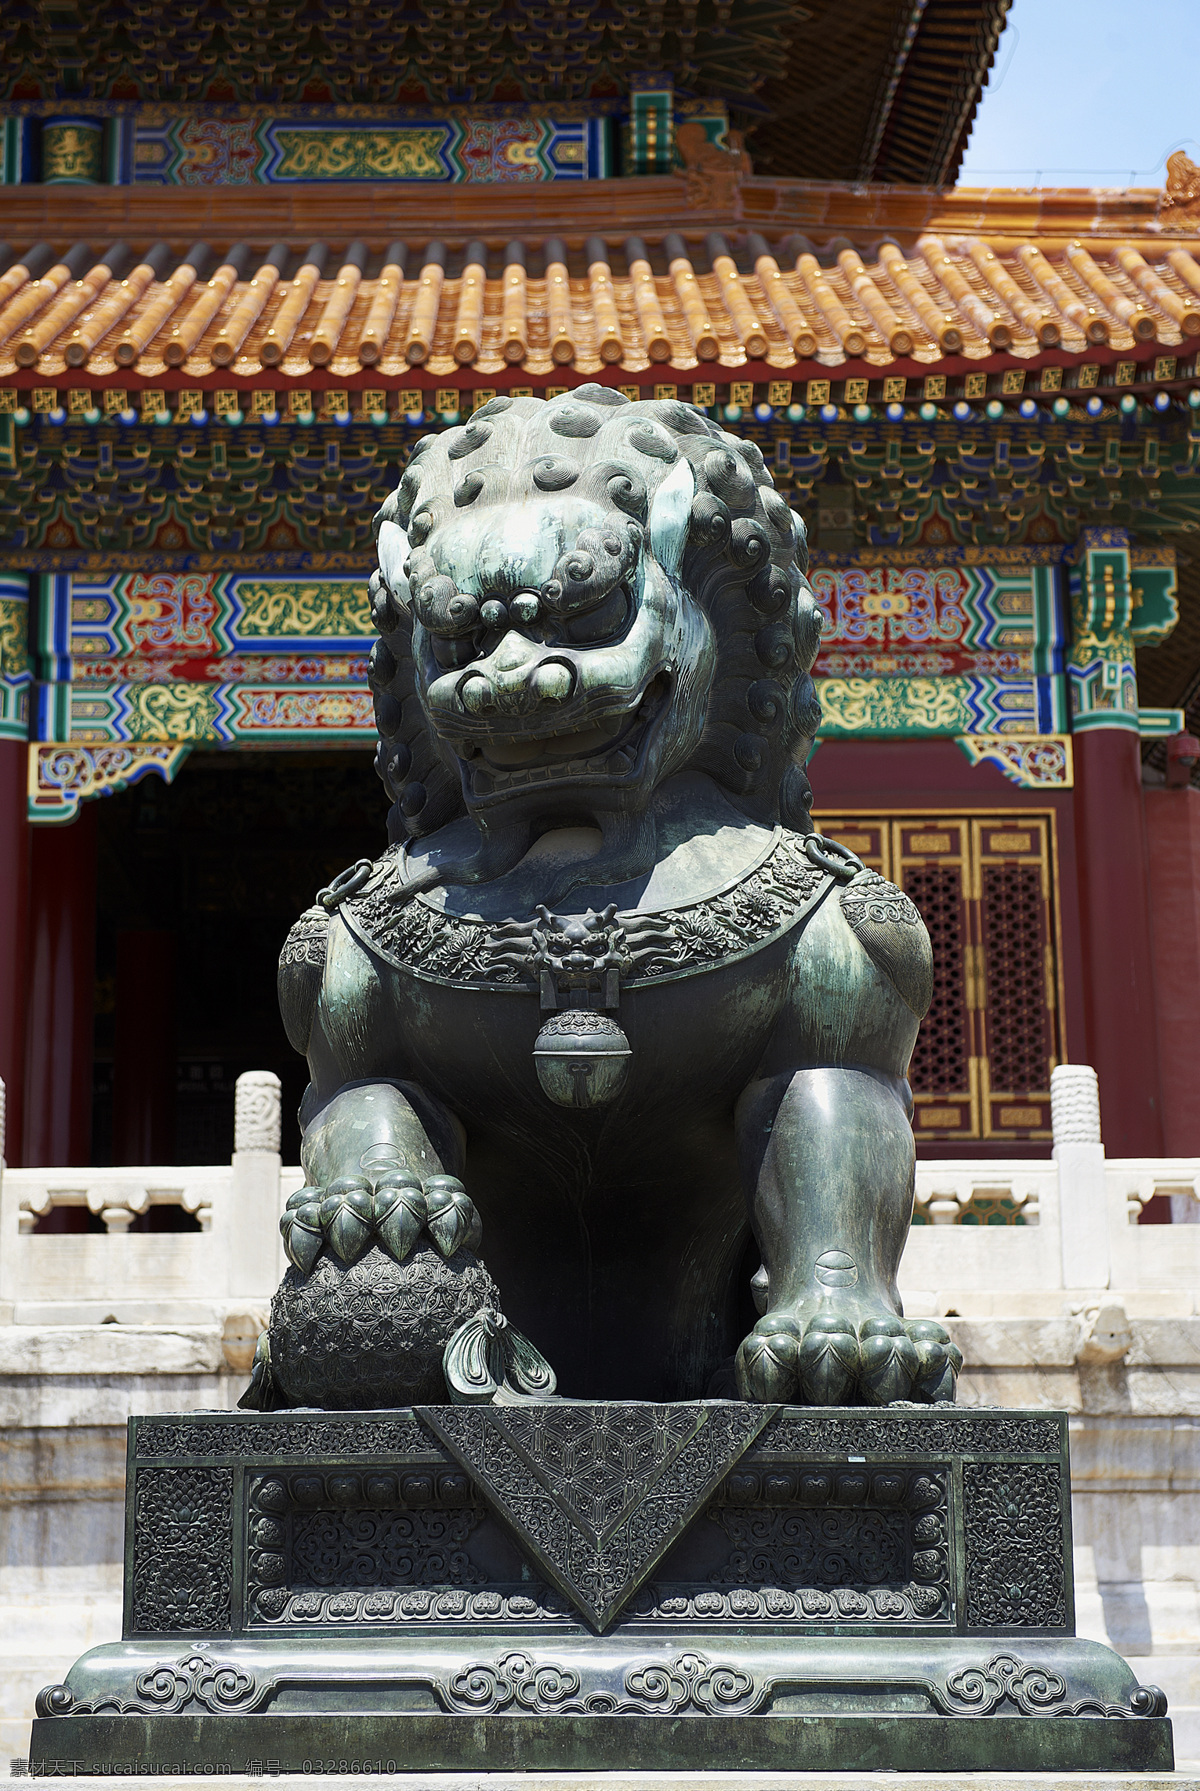 北京 紫禁城 博物馆 古建筑 中式建筑 传统建筑 故宫博物院 世界文化遗产 历史建筑 古老的建筑 狮子 雕塑 铜狮子 文化艺术 传统文化